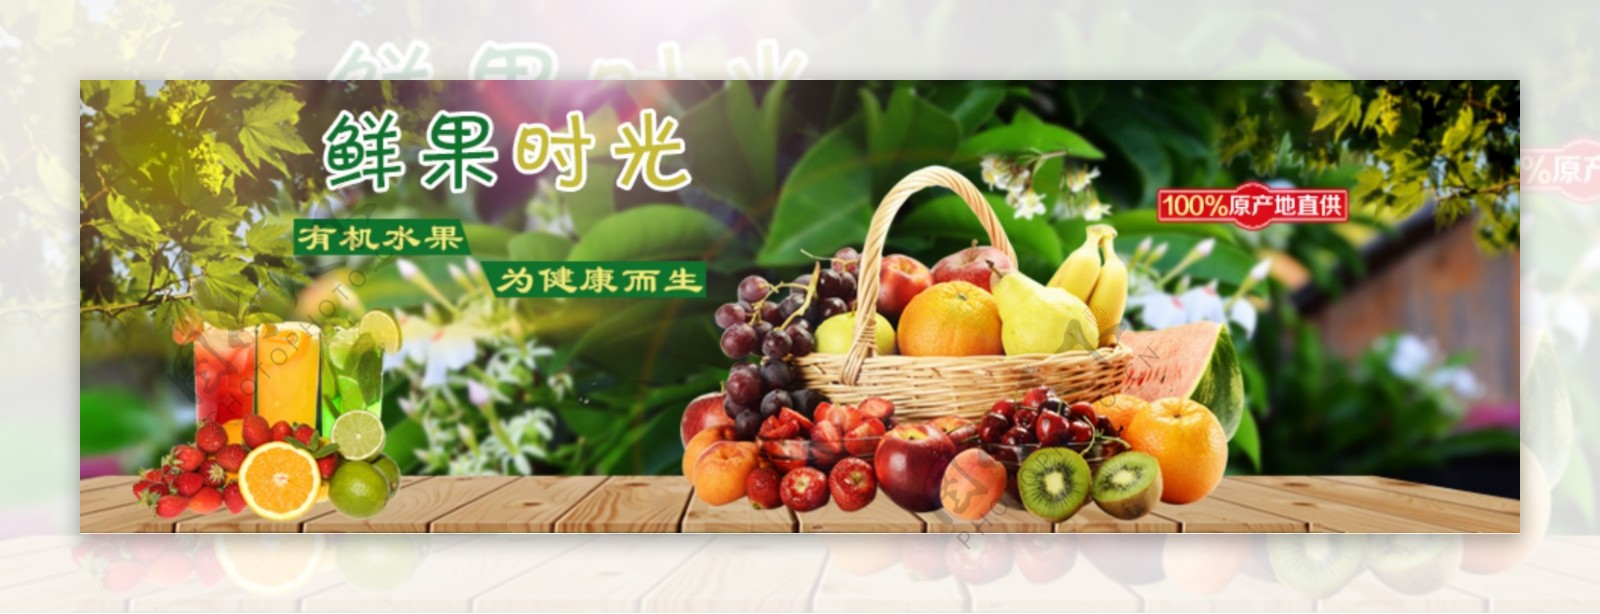 水果广告素材图片